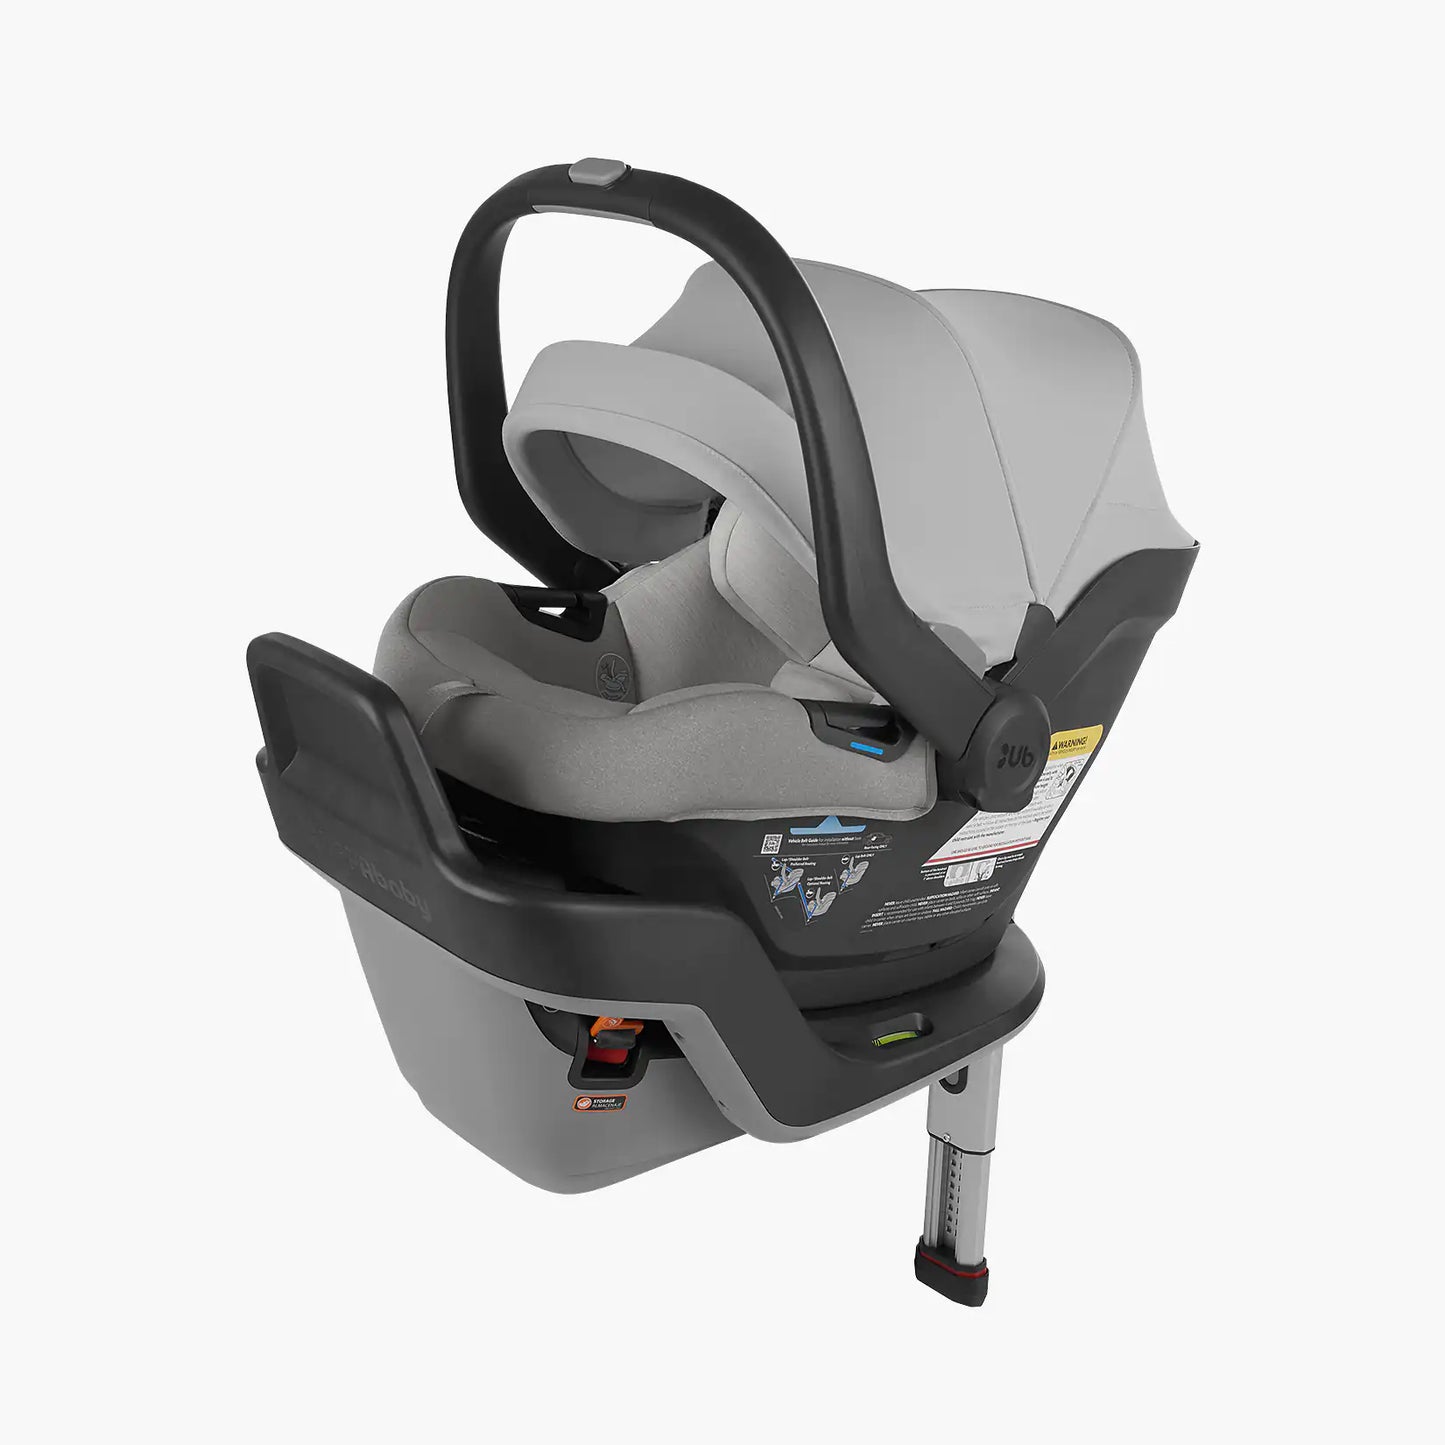 UPPAbaby MESA Max Infant Car Seat and Base